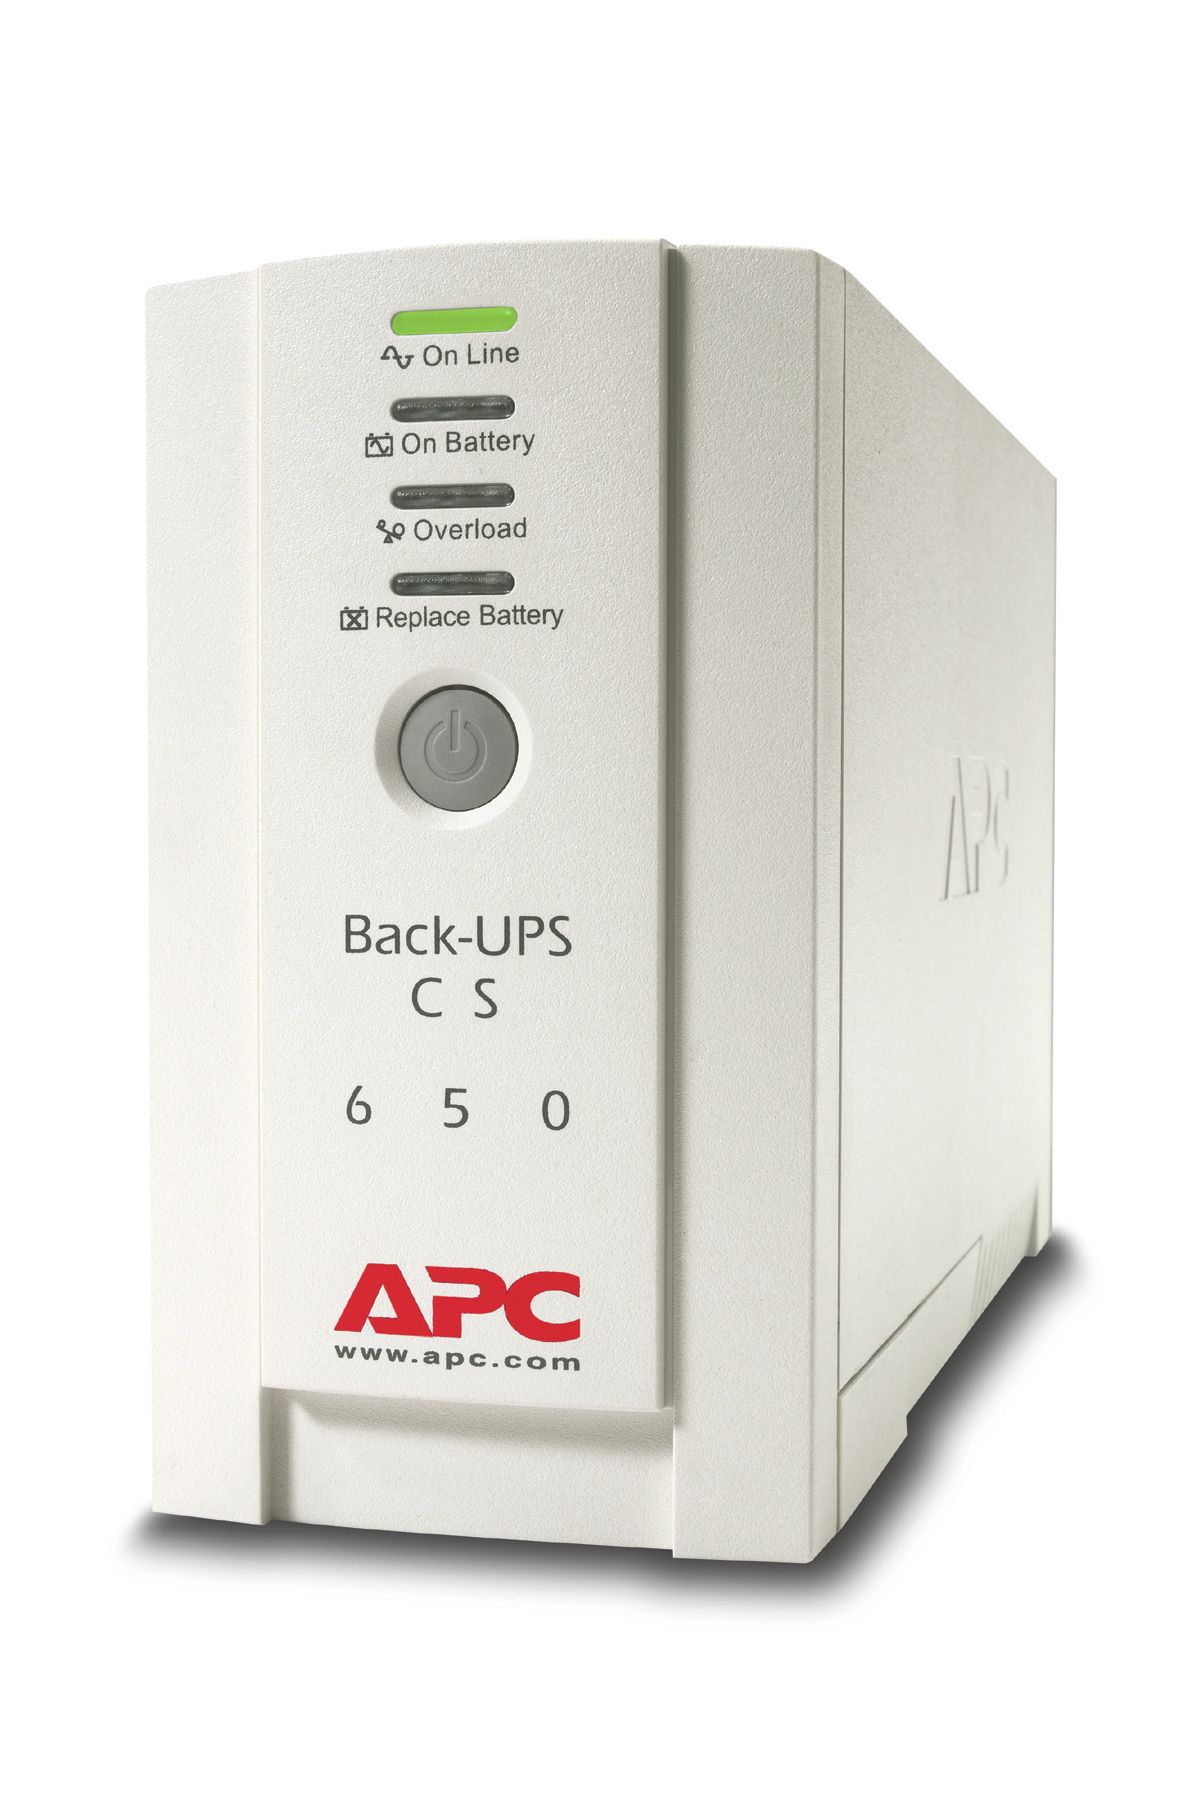 Apc cs 650. APC back-ups CS 500. APC back-ups 500va. ИБП APC bk500-RS. ИБП APC back-ups CS 500va.